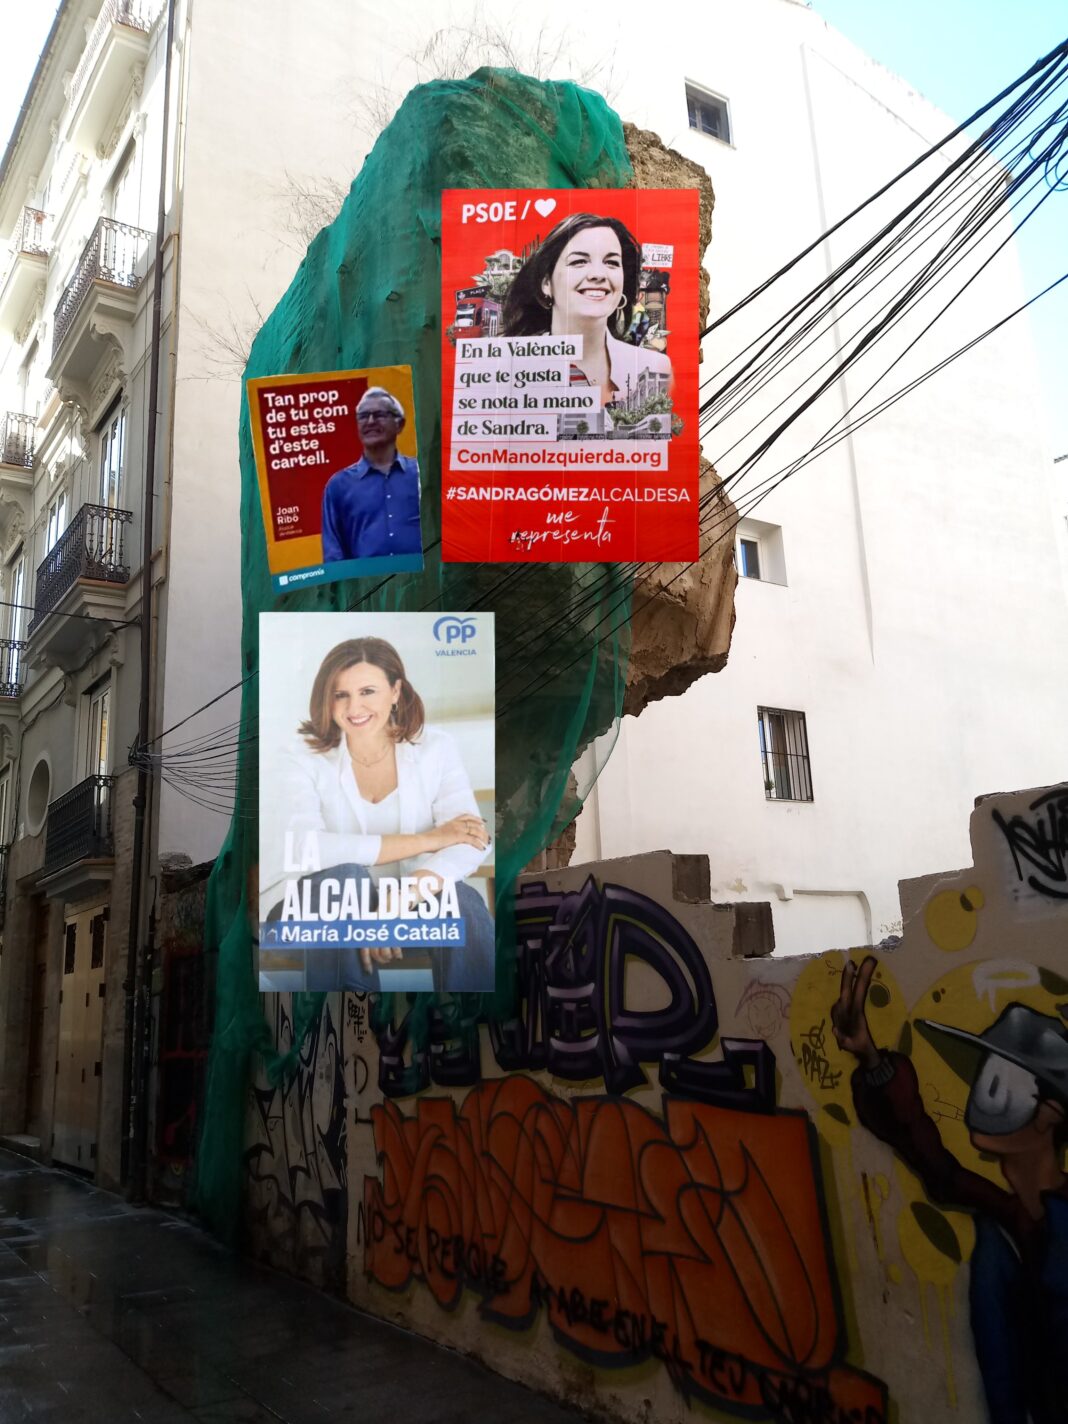 El tamaño importa, las soluciones no, los problemas esperan en Valencia mientras que los políticos siguen comparando el tamaño (de sus pancartas)